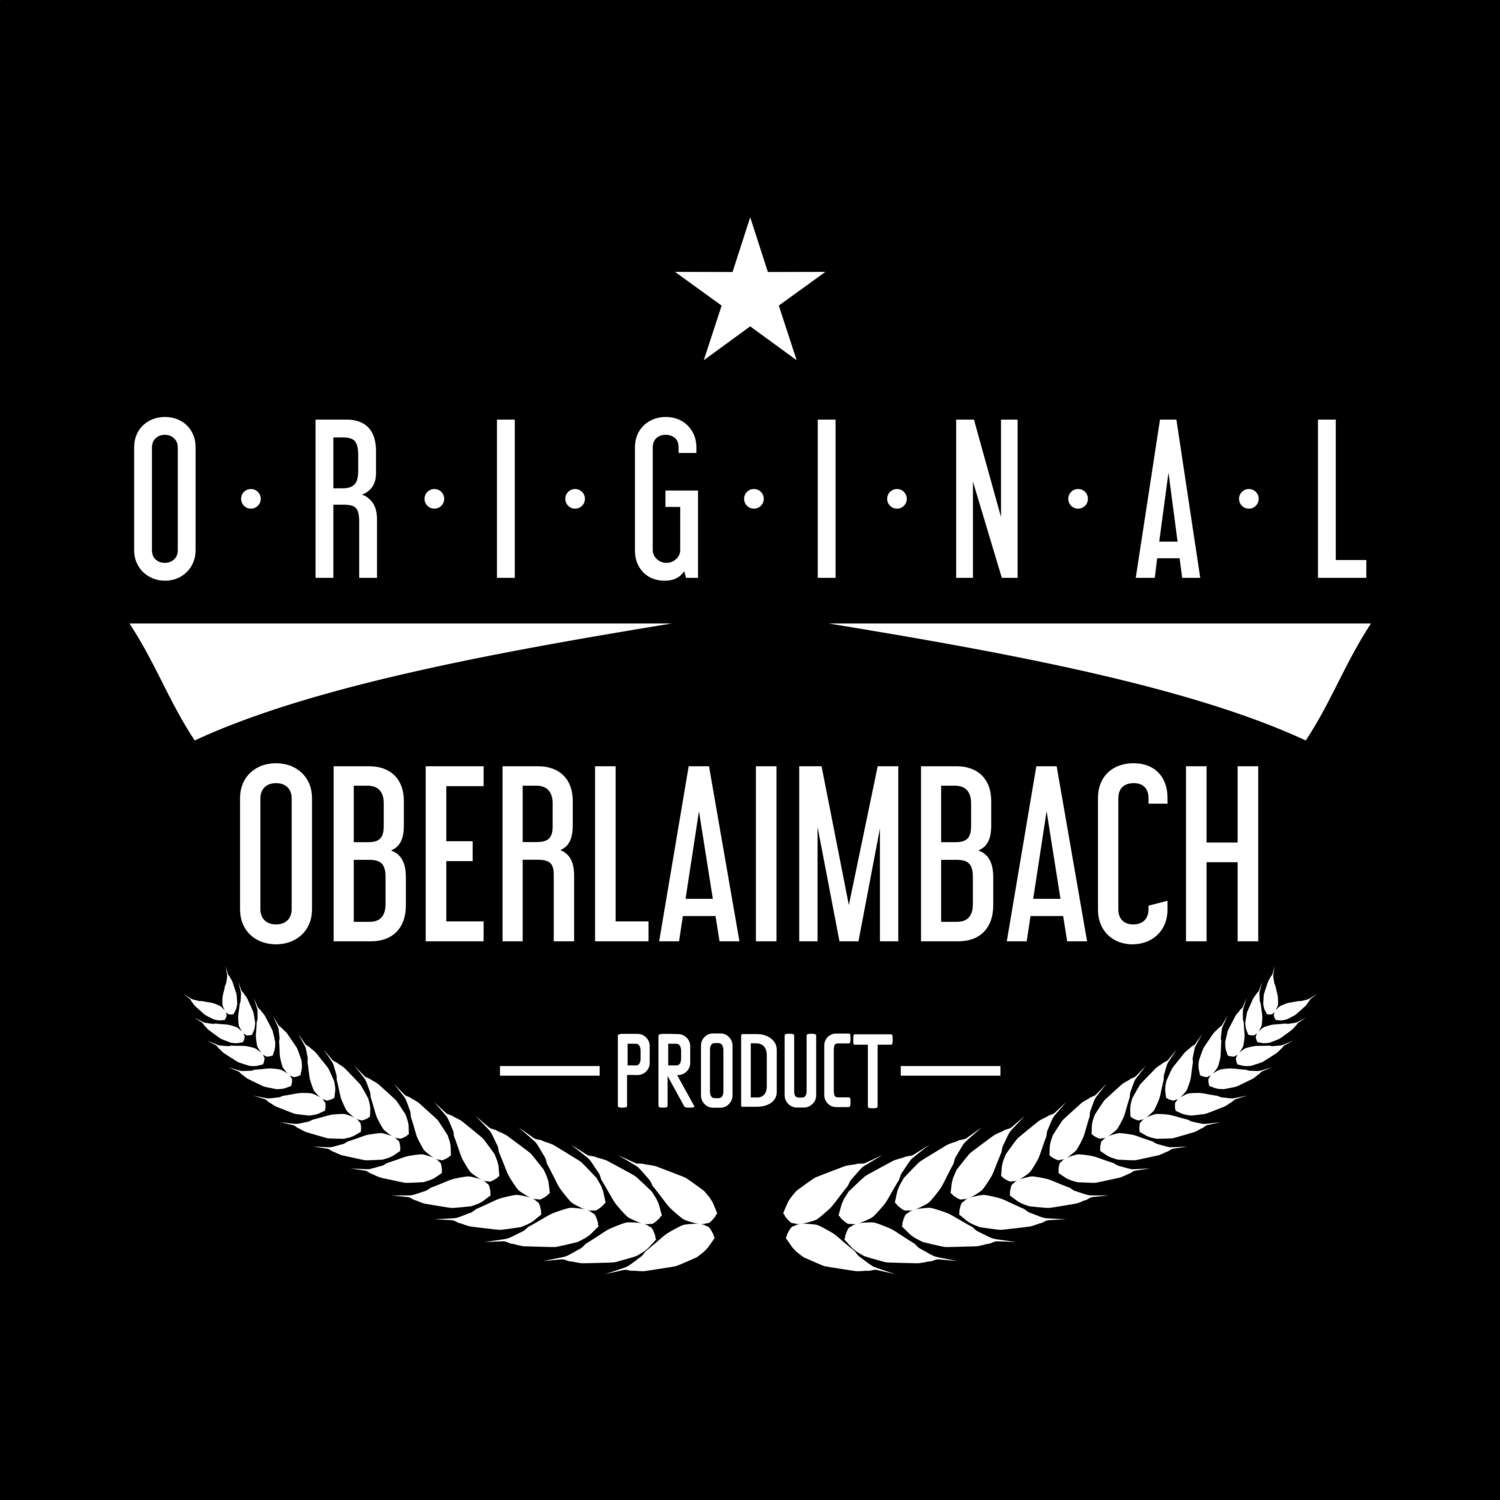 Oberlaimbach T-Shirt »Original Product«